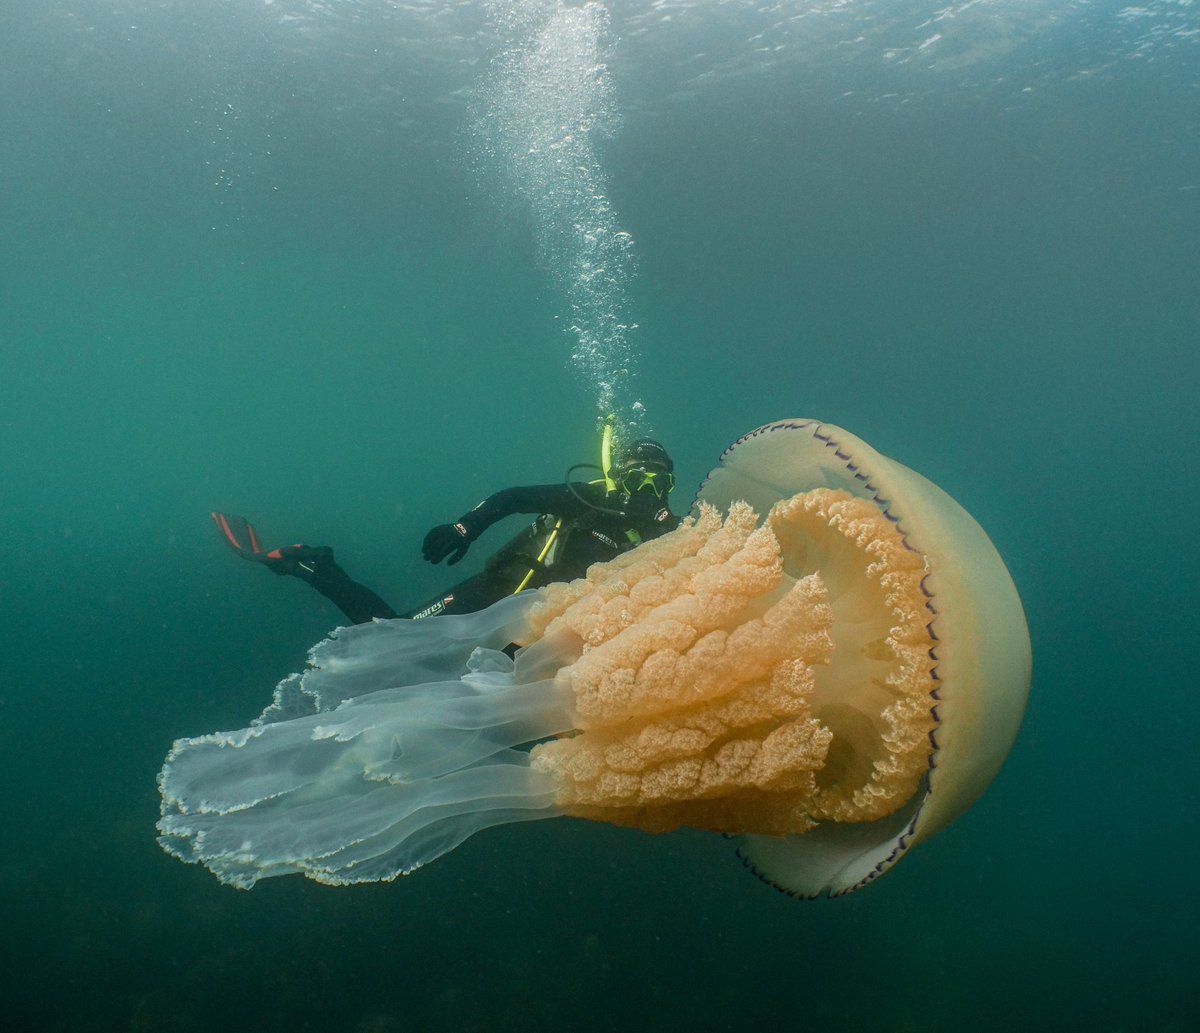 Дайвери сфоткали медузу, яка своїм розміром лякає людей. Вона вас не з'їсть, але парочку фобій точно додасть.